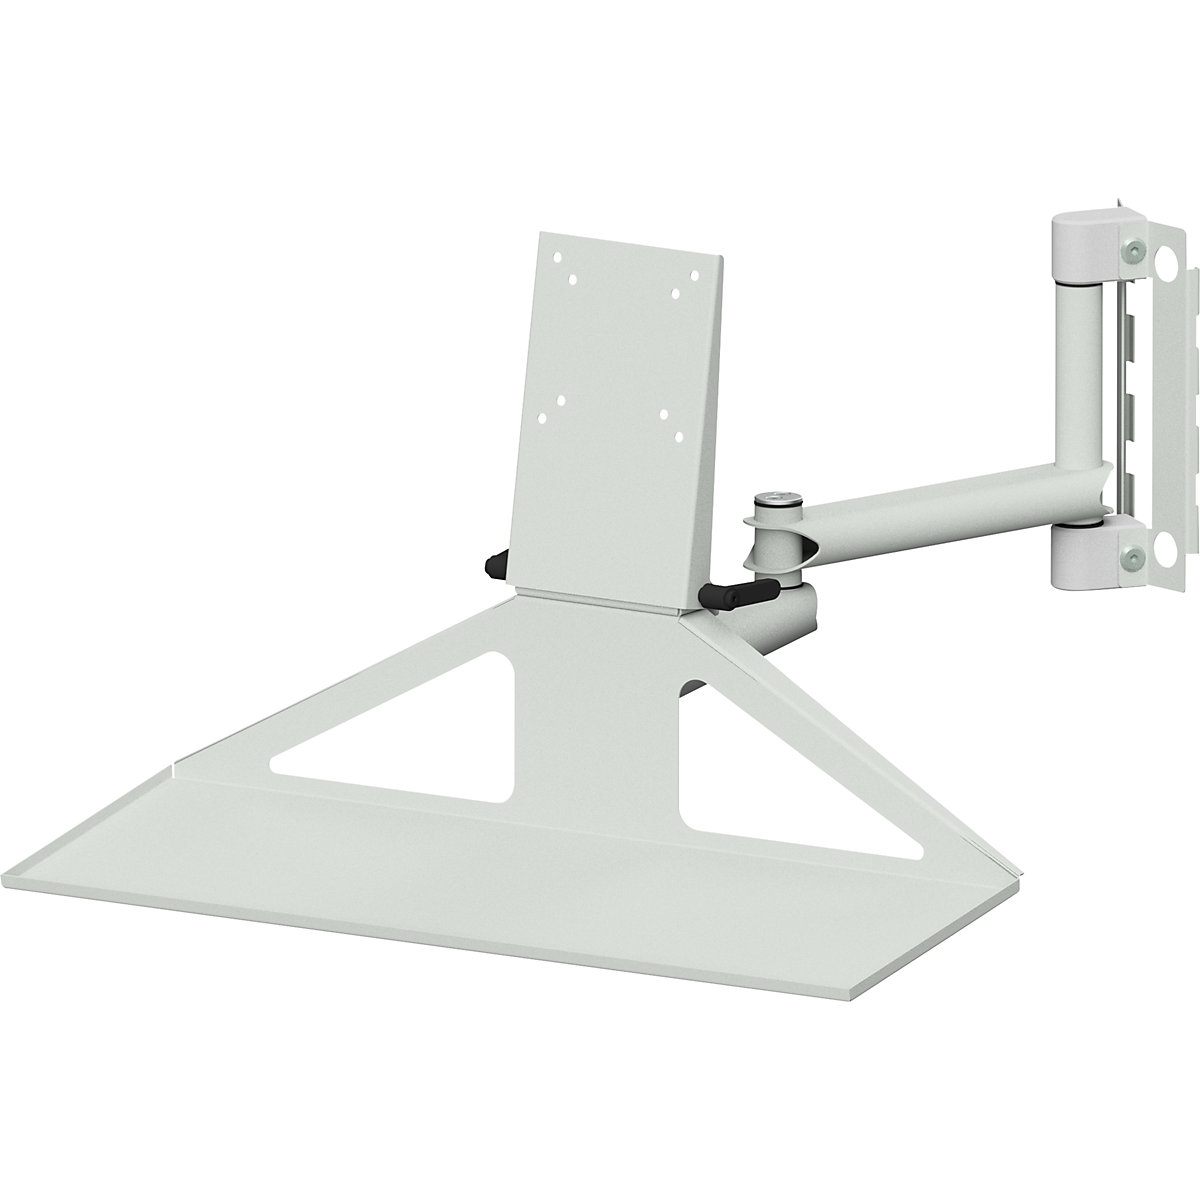 Kloubové rameno pro pracovní stoly s elektrickým přestavováním výšky LIFT – ANKE